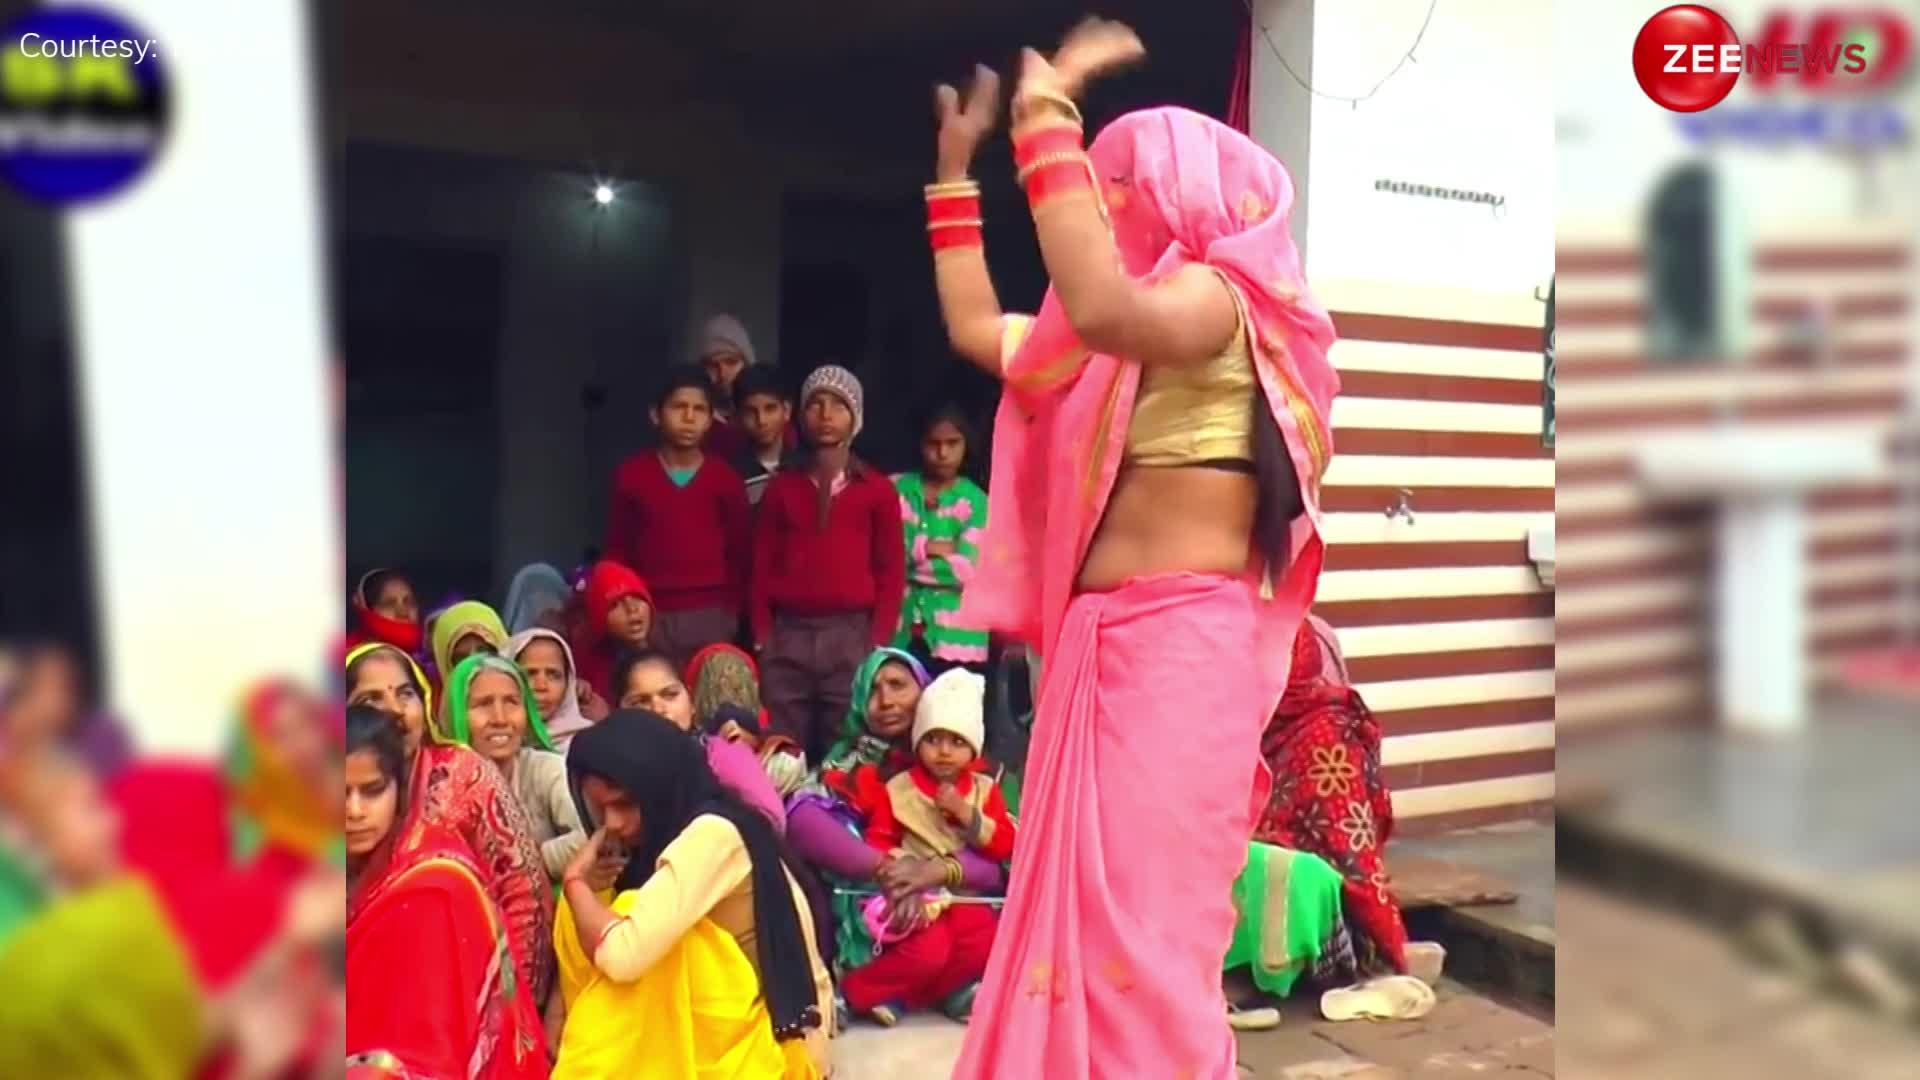 देहाती नाच करते हुए बहू ने एक हाथ से साड़ी उठाकर किया ऐसा डांस, देख लोग बोले- किसकी लुगाई है